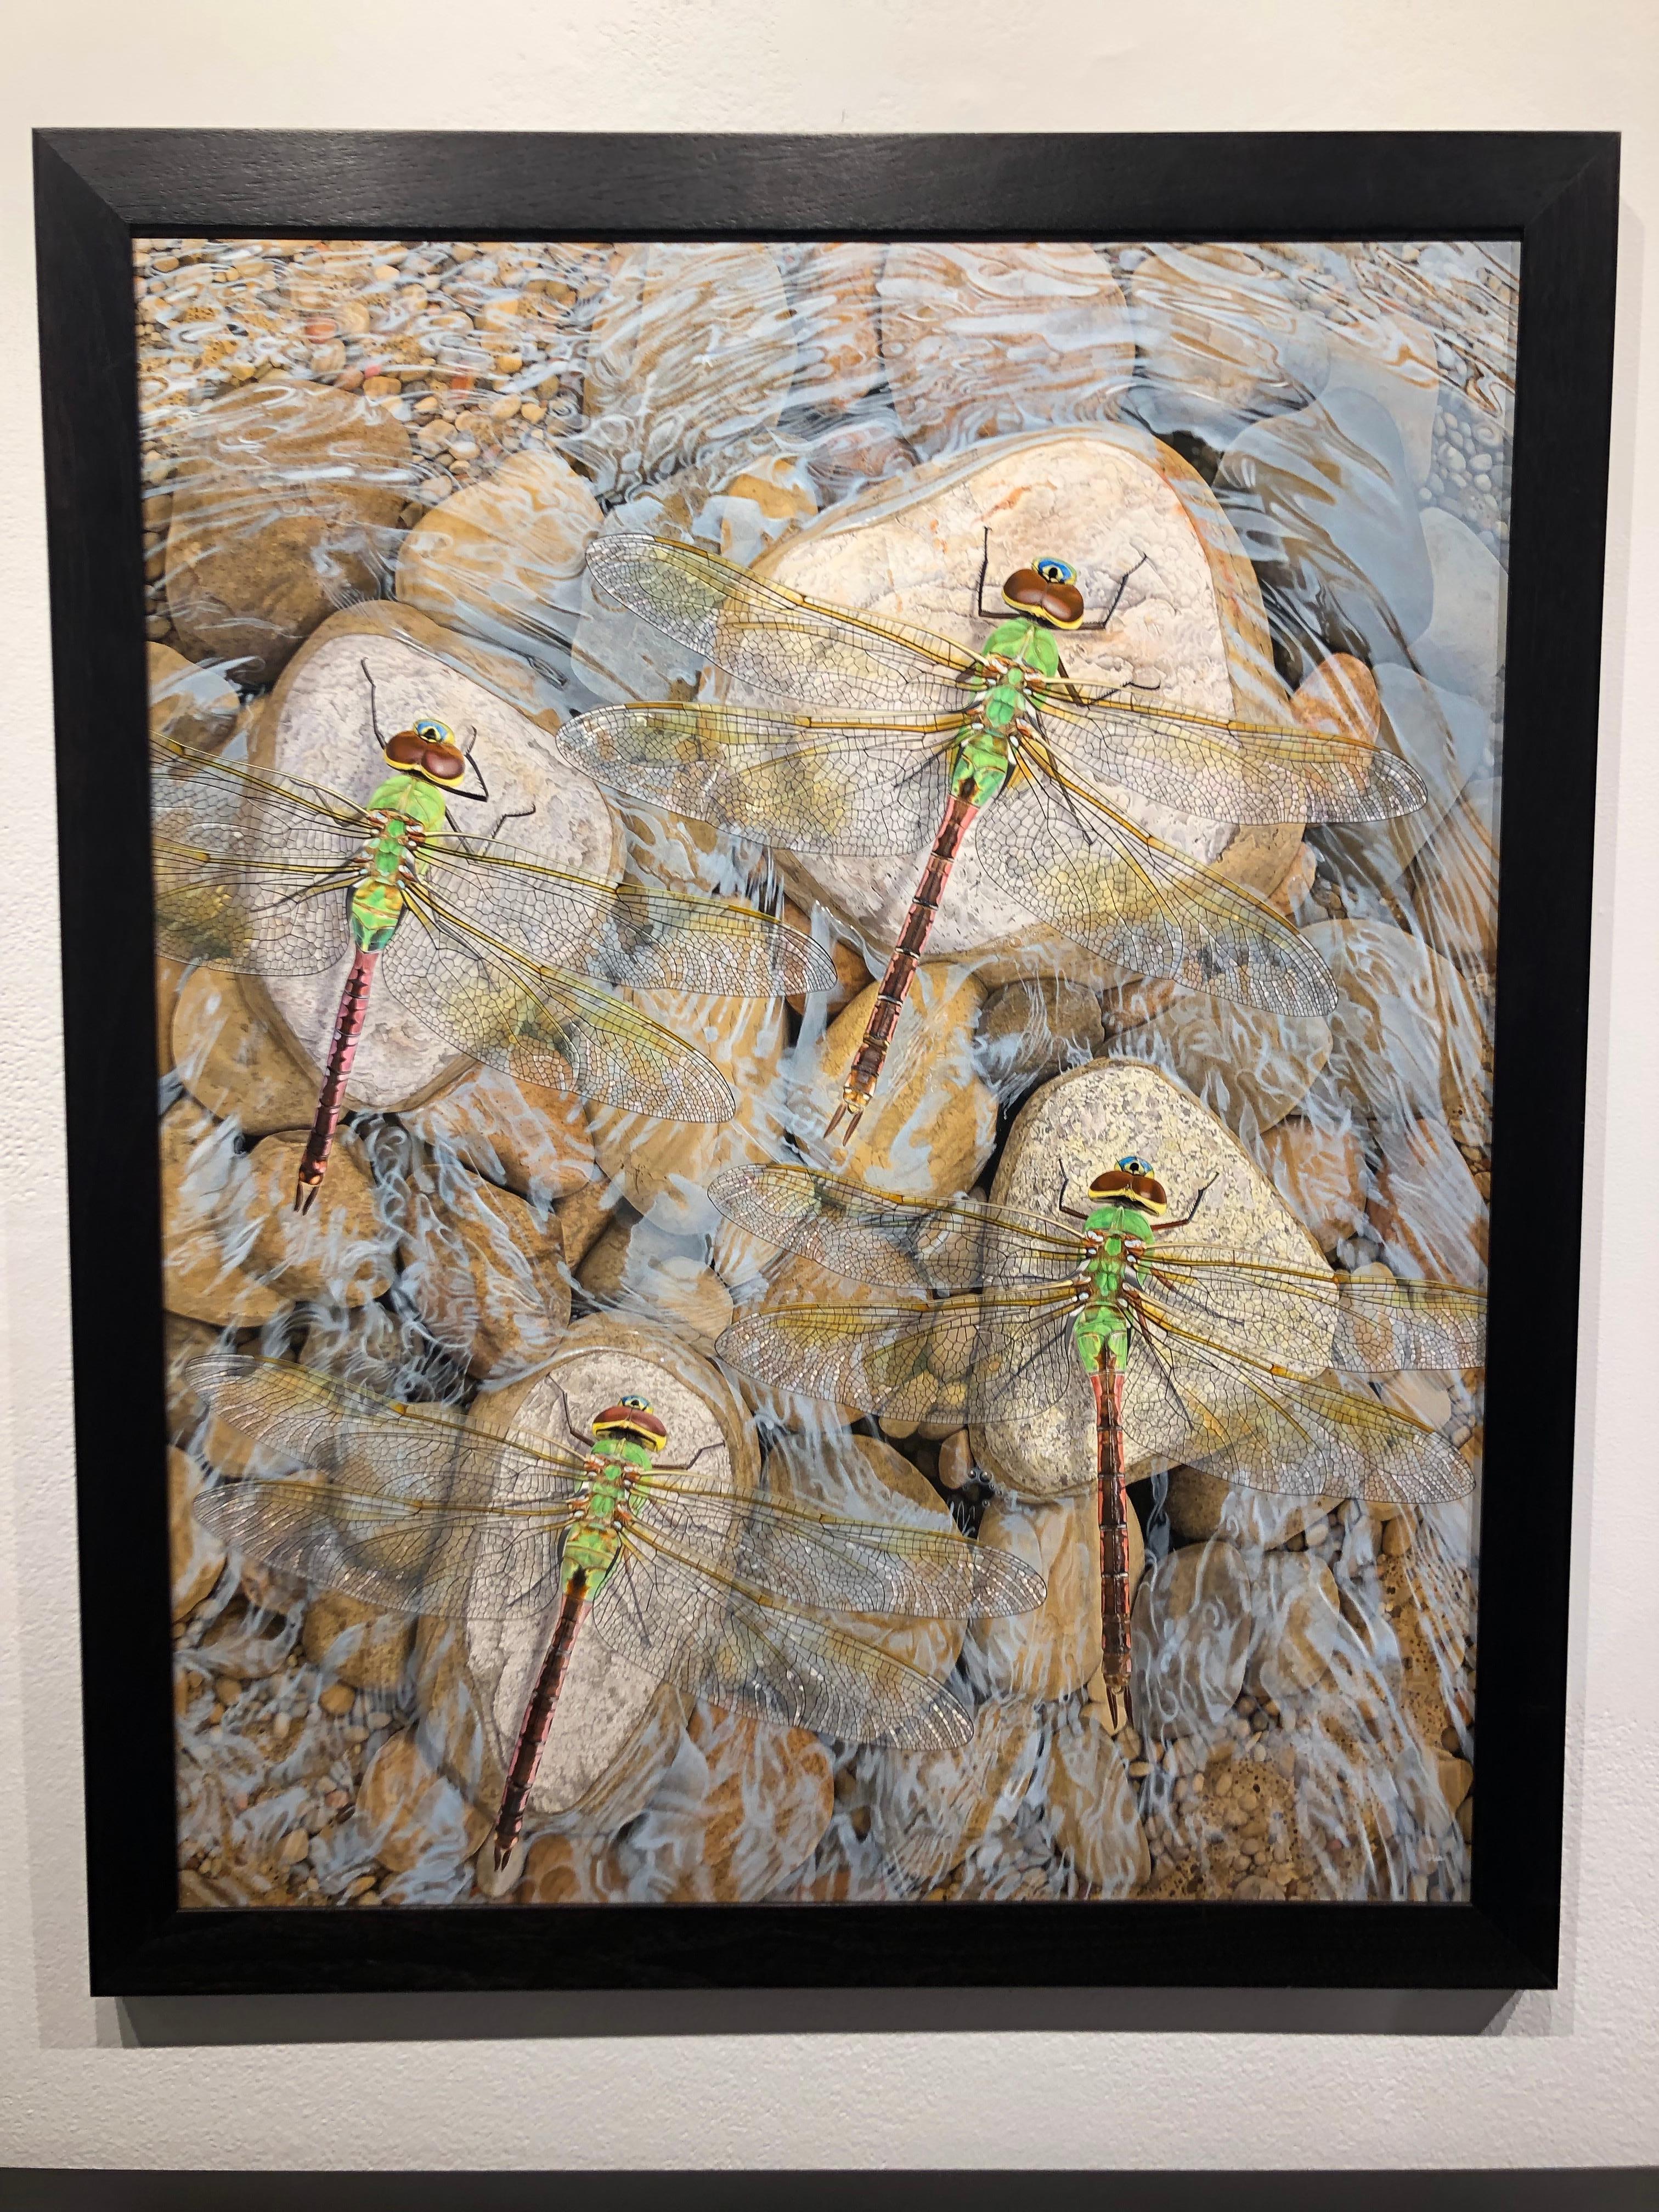 Rocks in the Current – Original fotorealistisches Gemälde von Libellen auf Steinen – Painting von Rick Pas